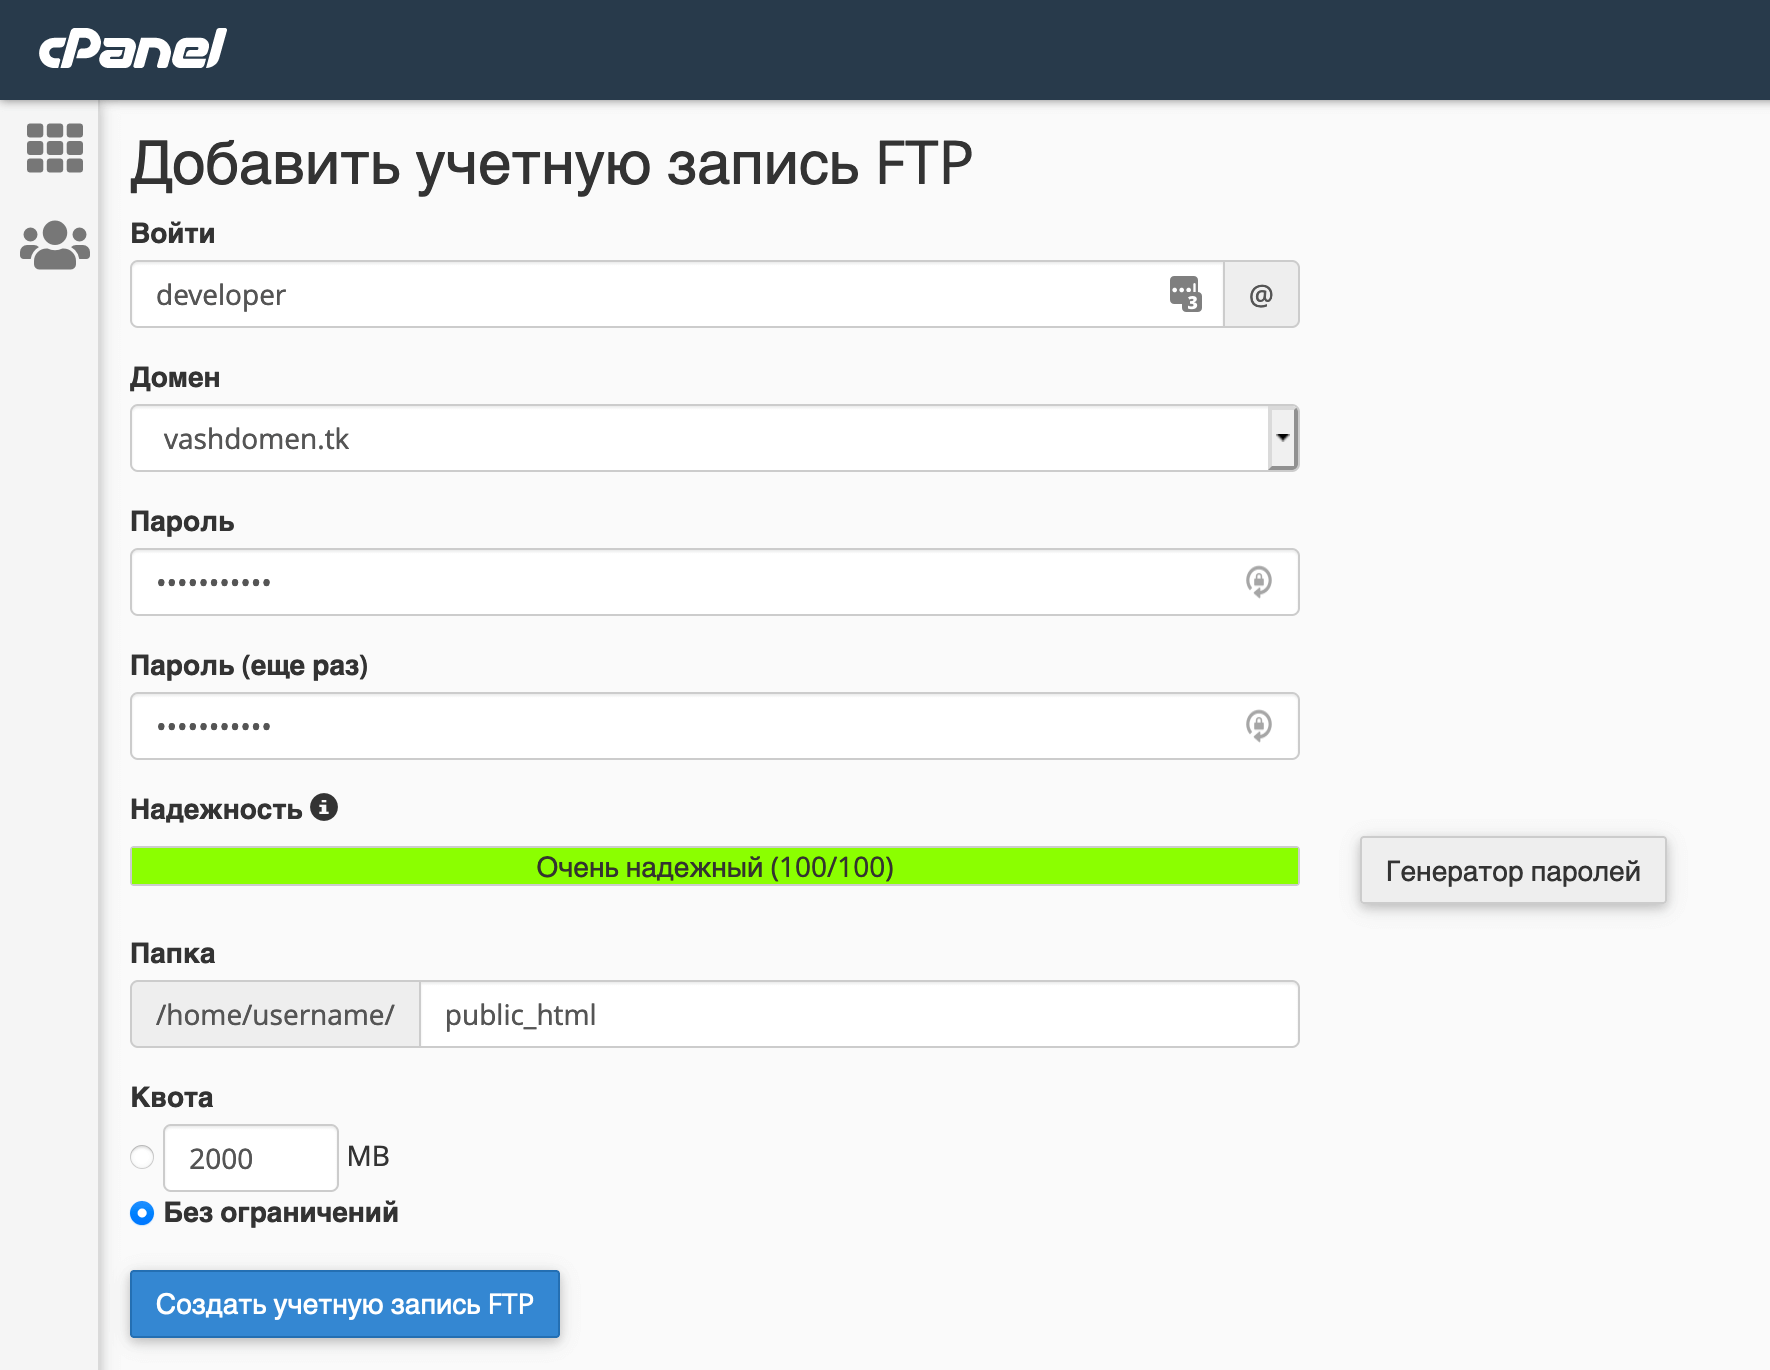 Добавление новой учетной записи FTP в cPanel